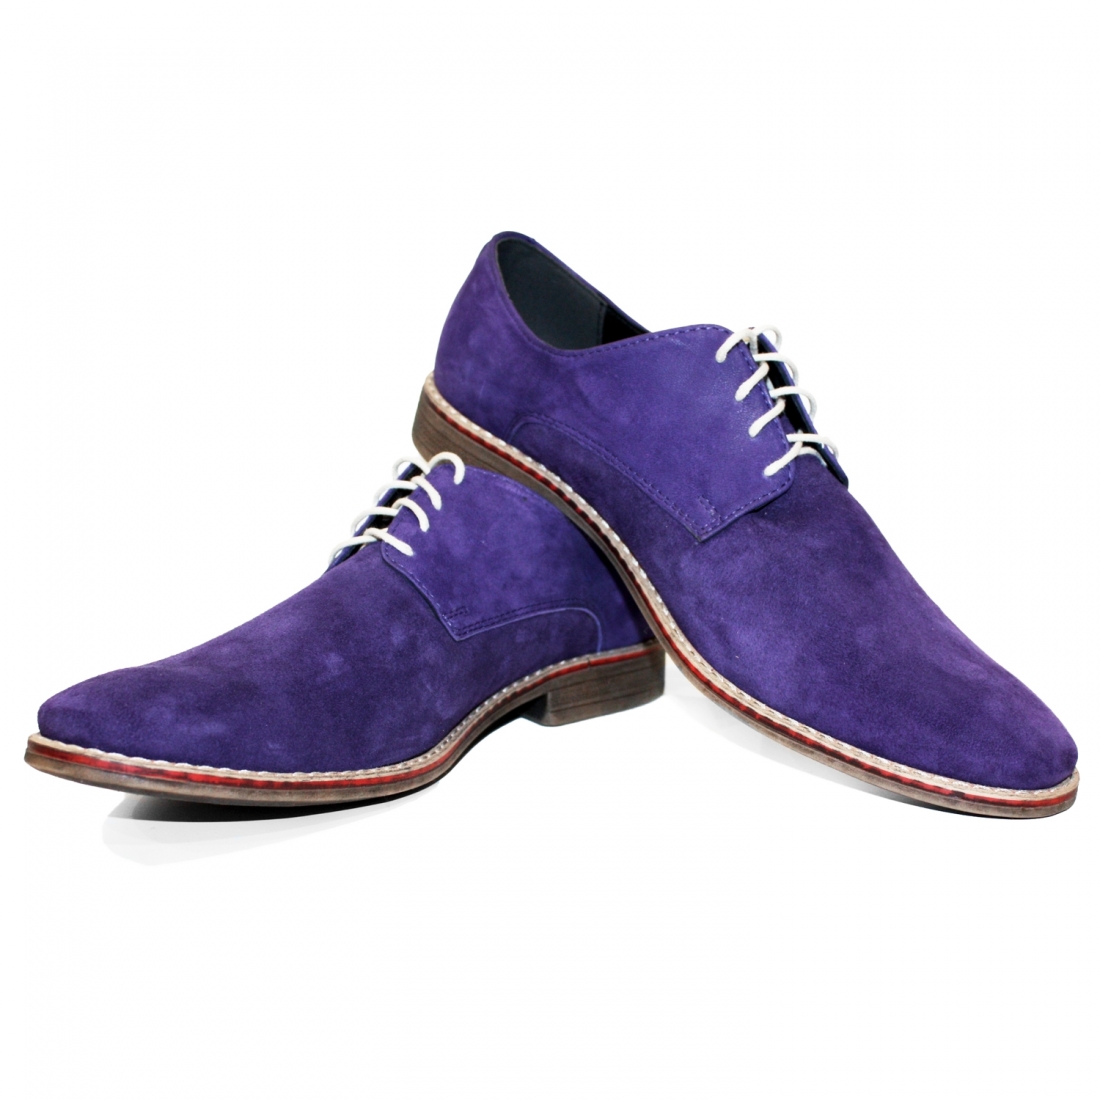 Modello Viollati - Buty Klasyczne - Handmade Colorful Italian Leather Shoes